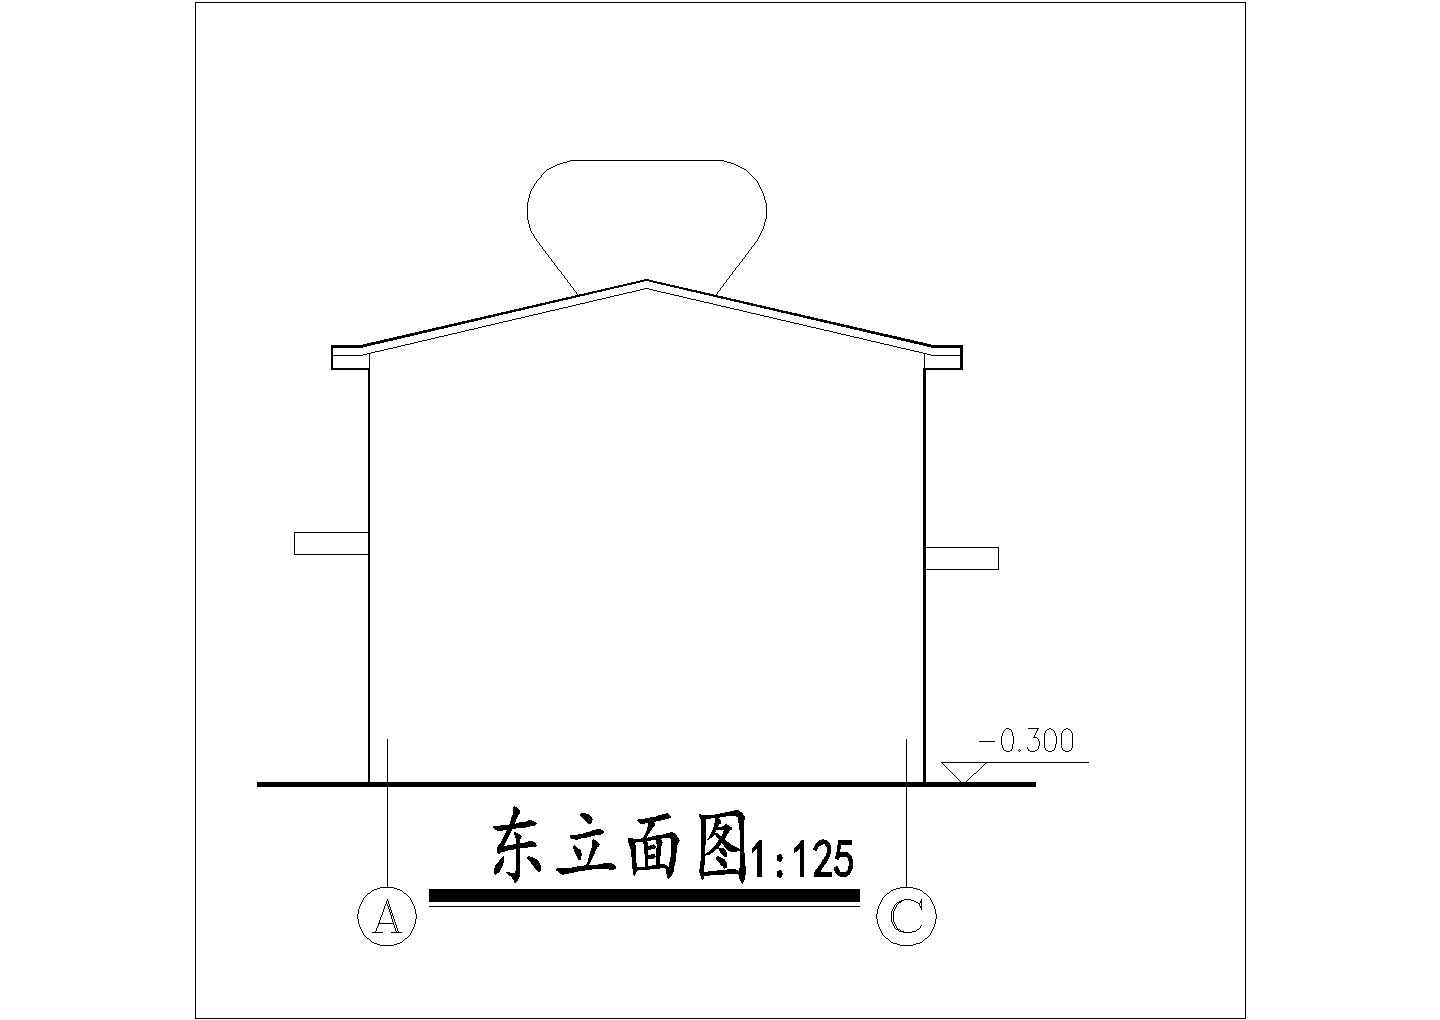 许昌市某食品厂小型单层砖混结构加工车间建筑设计CAD图纸